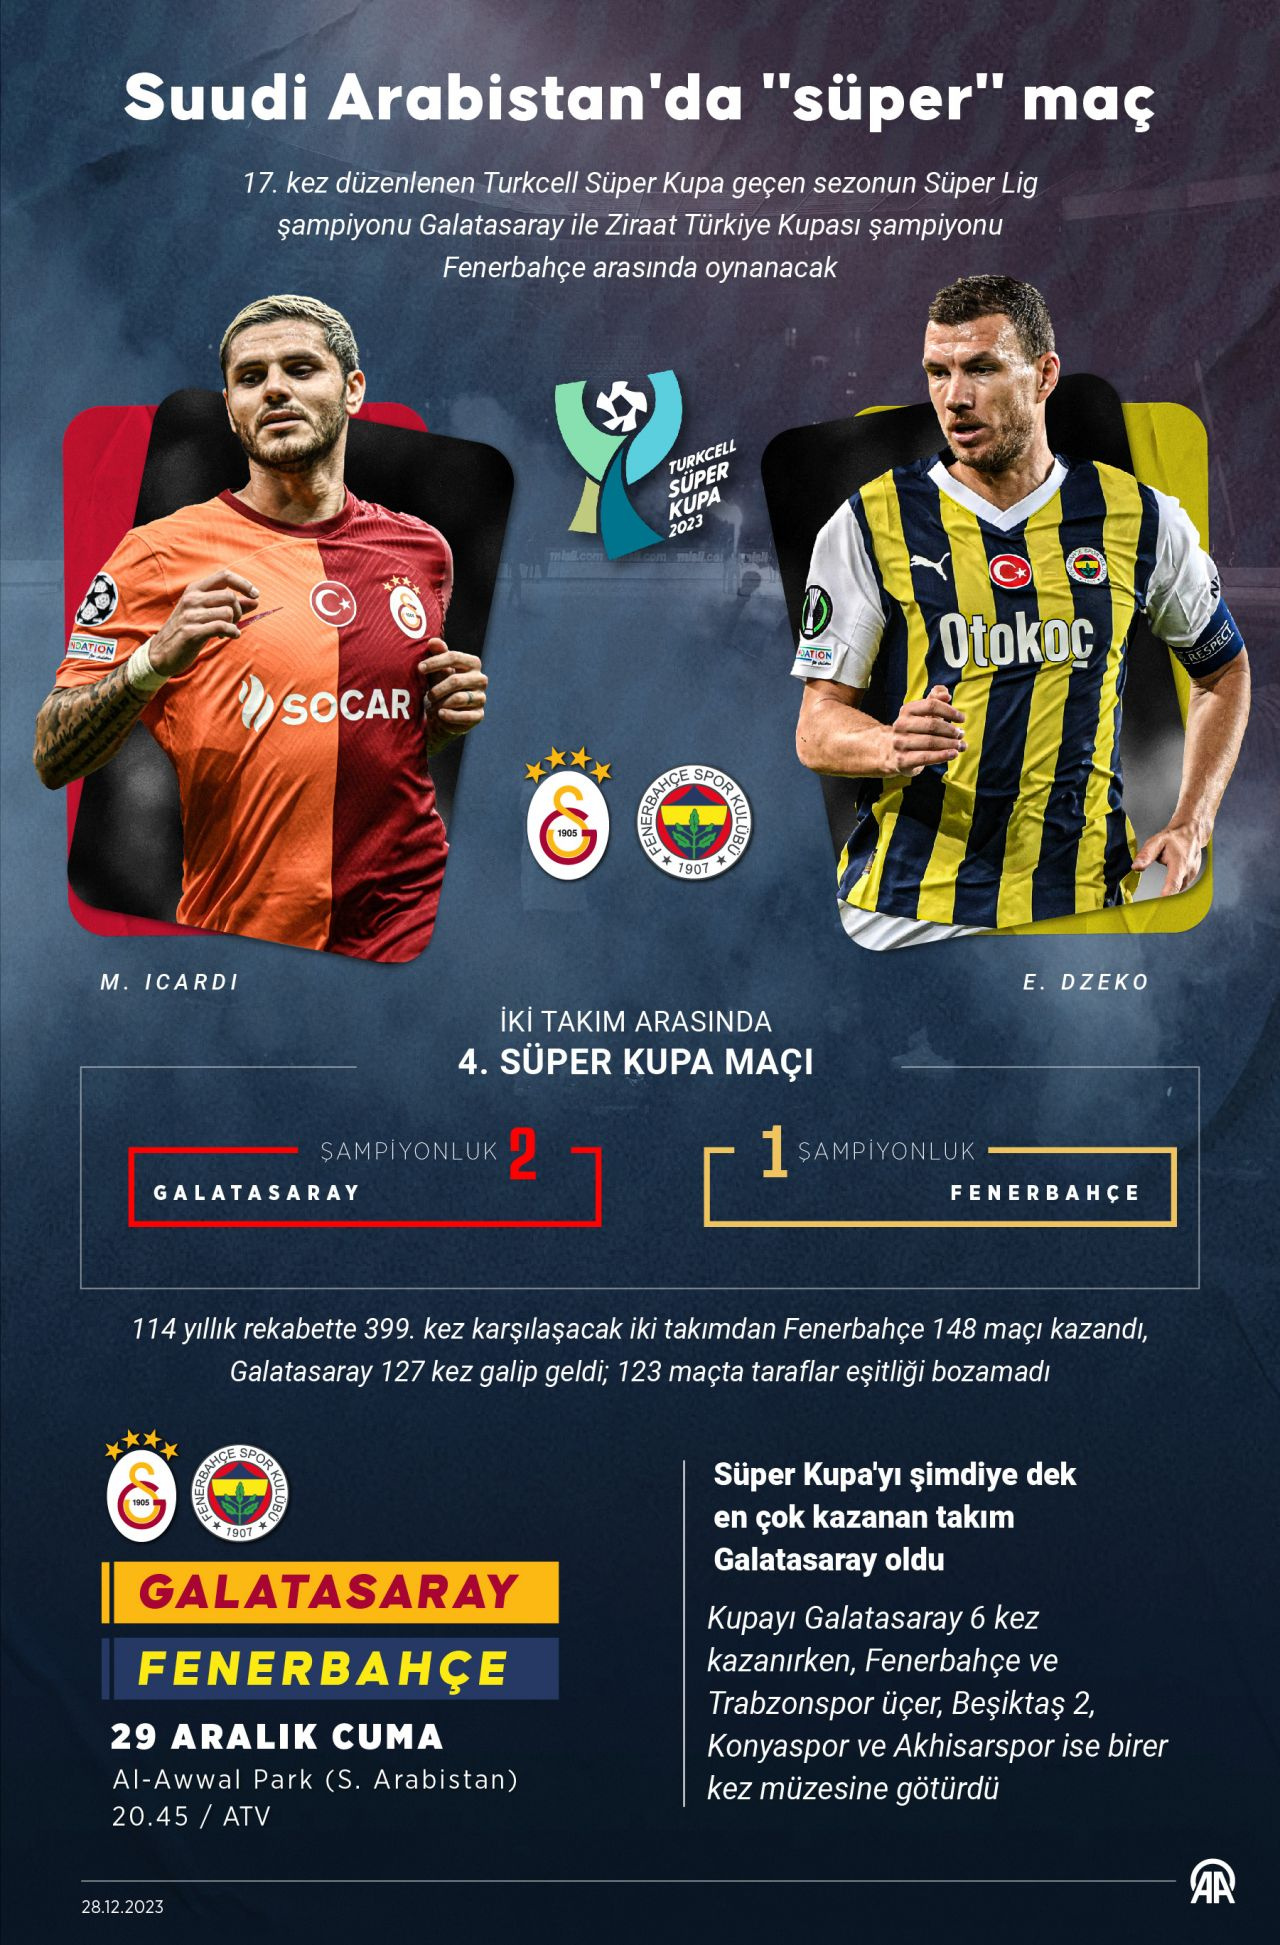 Cristiano Ronaldo, Süper Kupa favorisini açıkladı! Galatasaray mı Fenerbahçe mi?